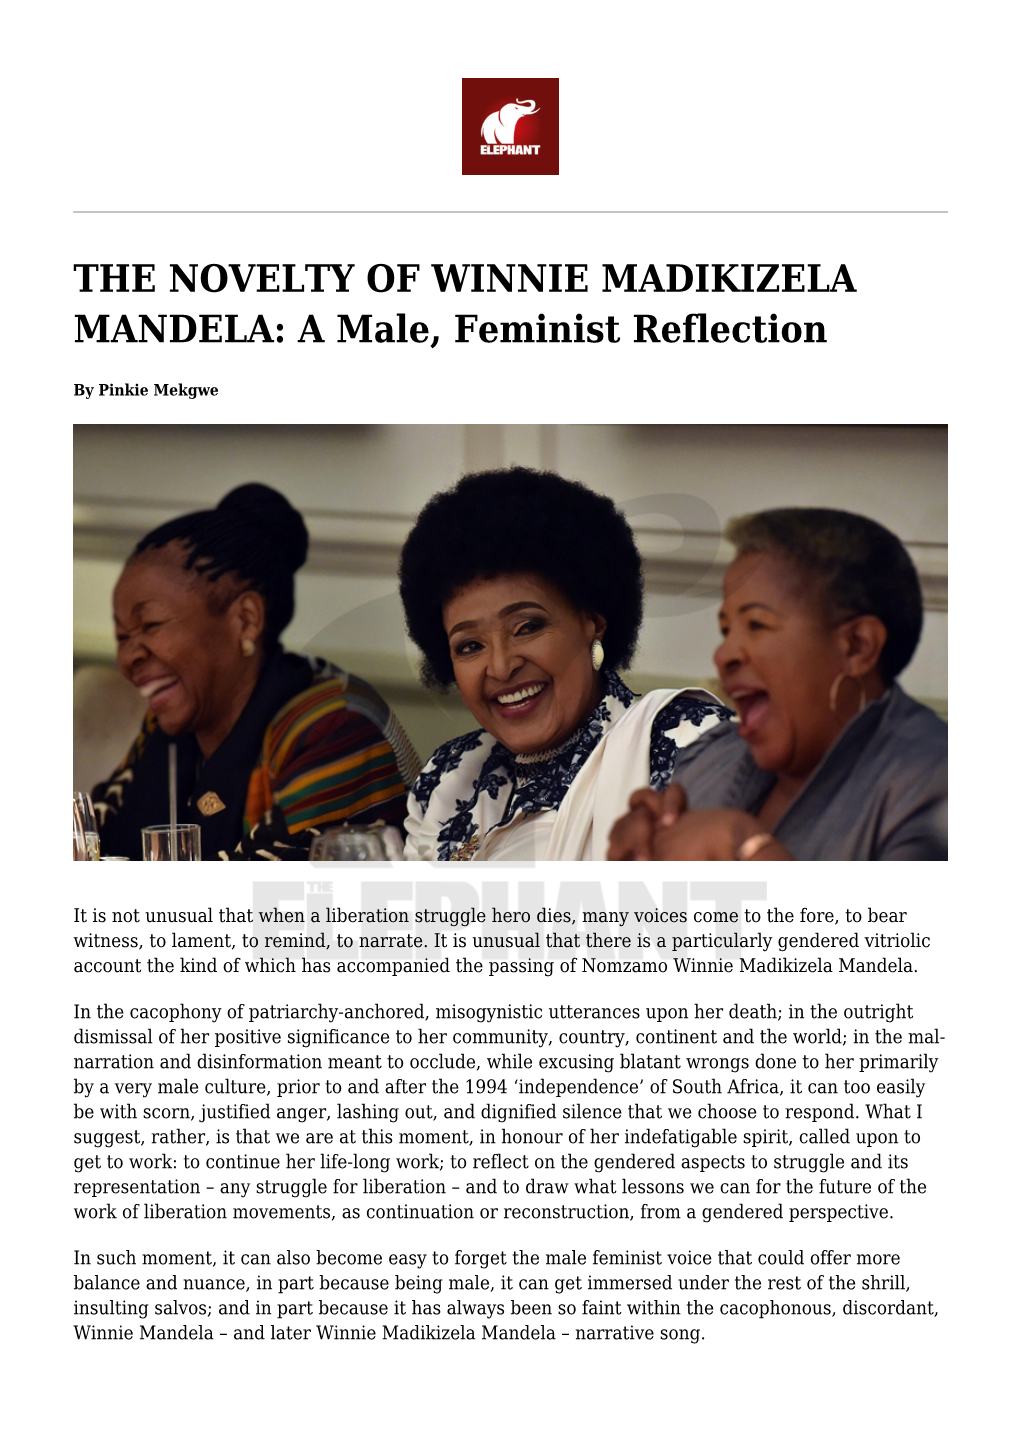 THE NOVELTY of WINNIE MADIKIZELA MANDELA: a Male, Feminist Reflection